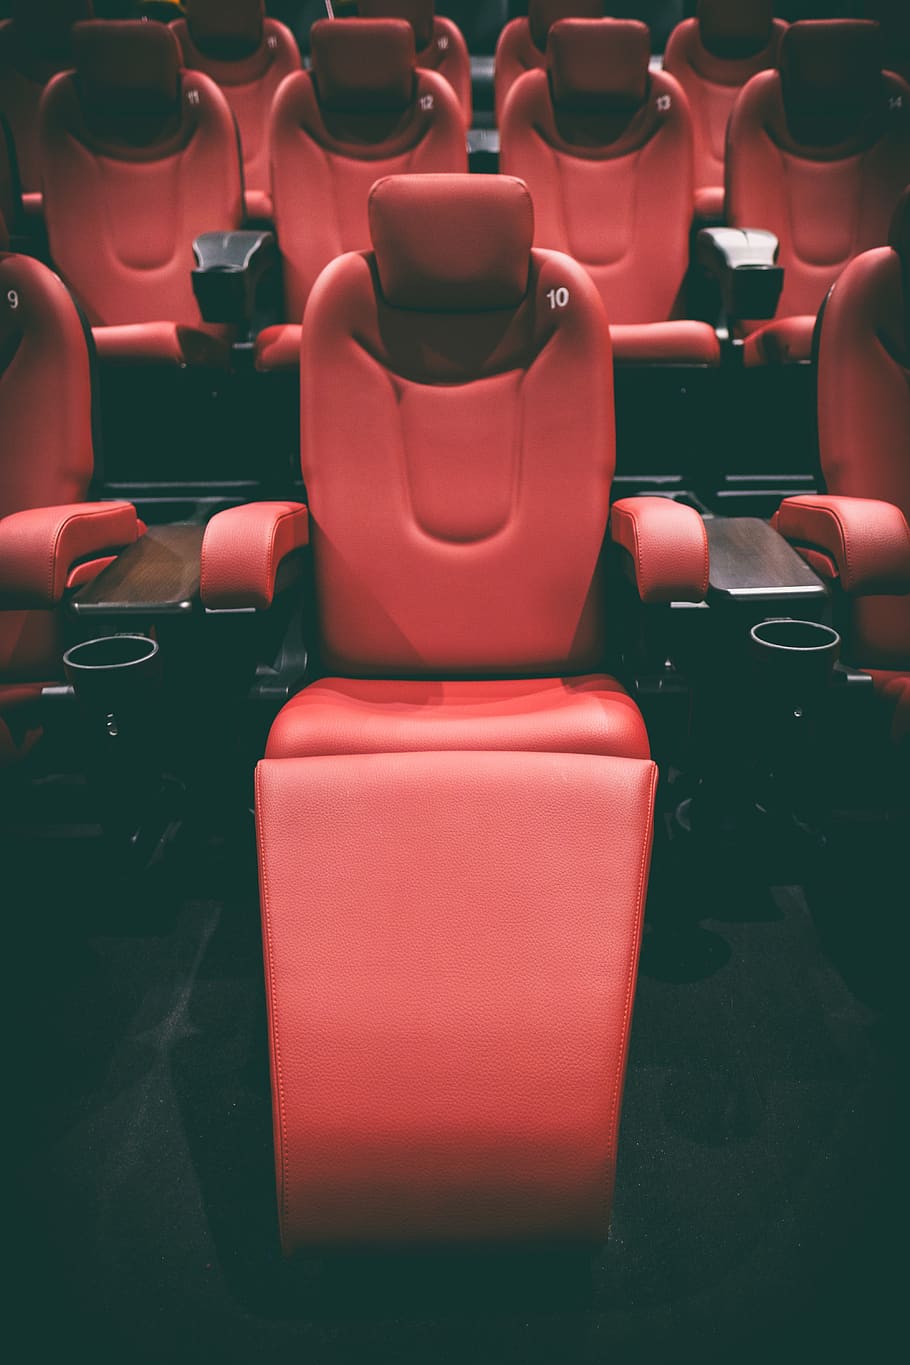 bioskop, teater, tempat duduk, kursi, nyaman, film, kosong, berturut-turut, ketiadaan, dalam ruangan